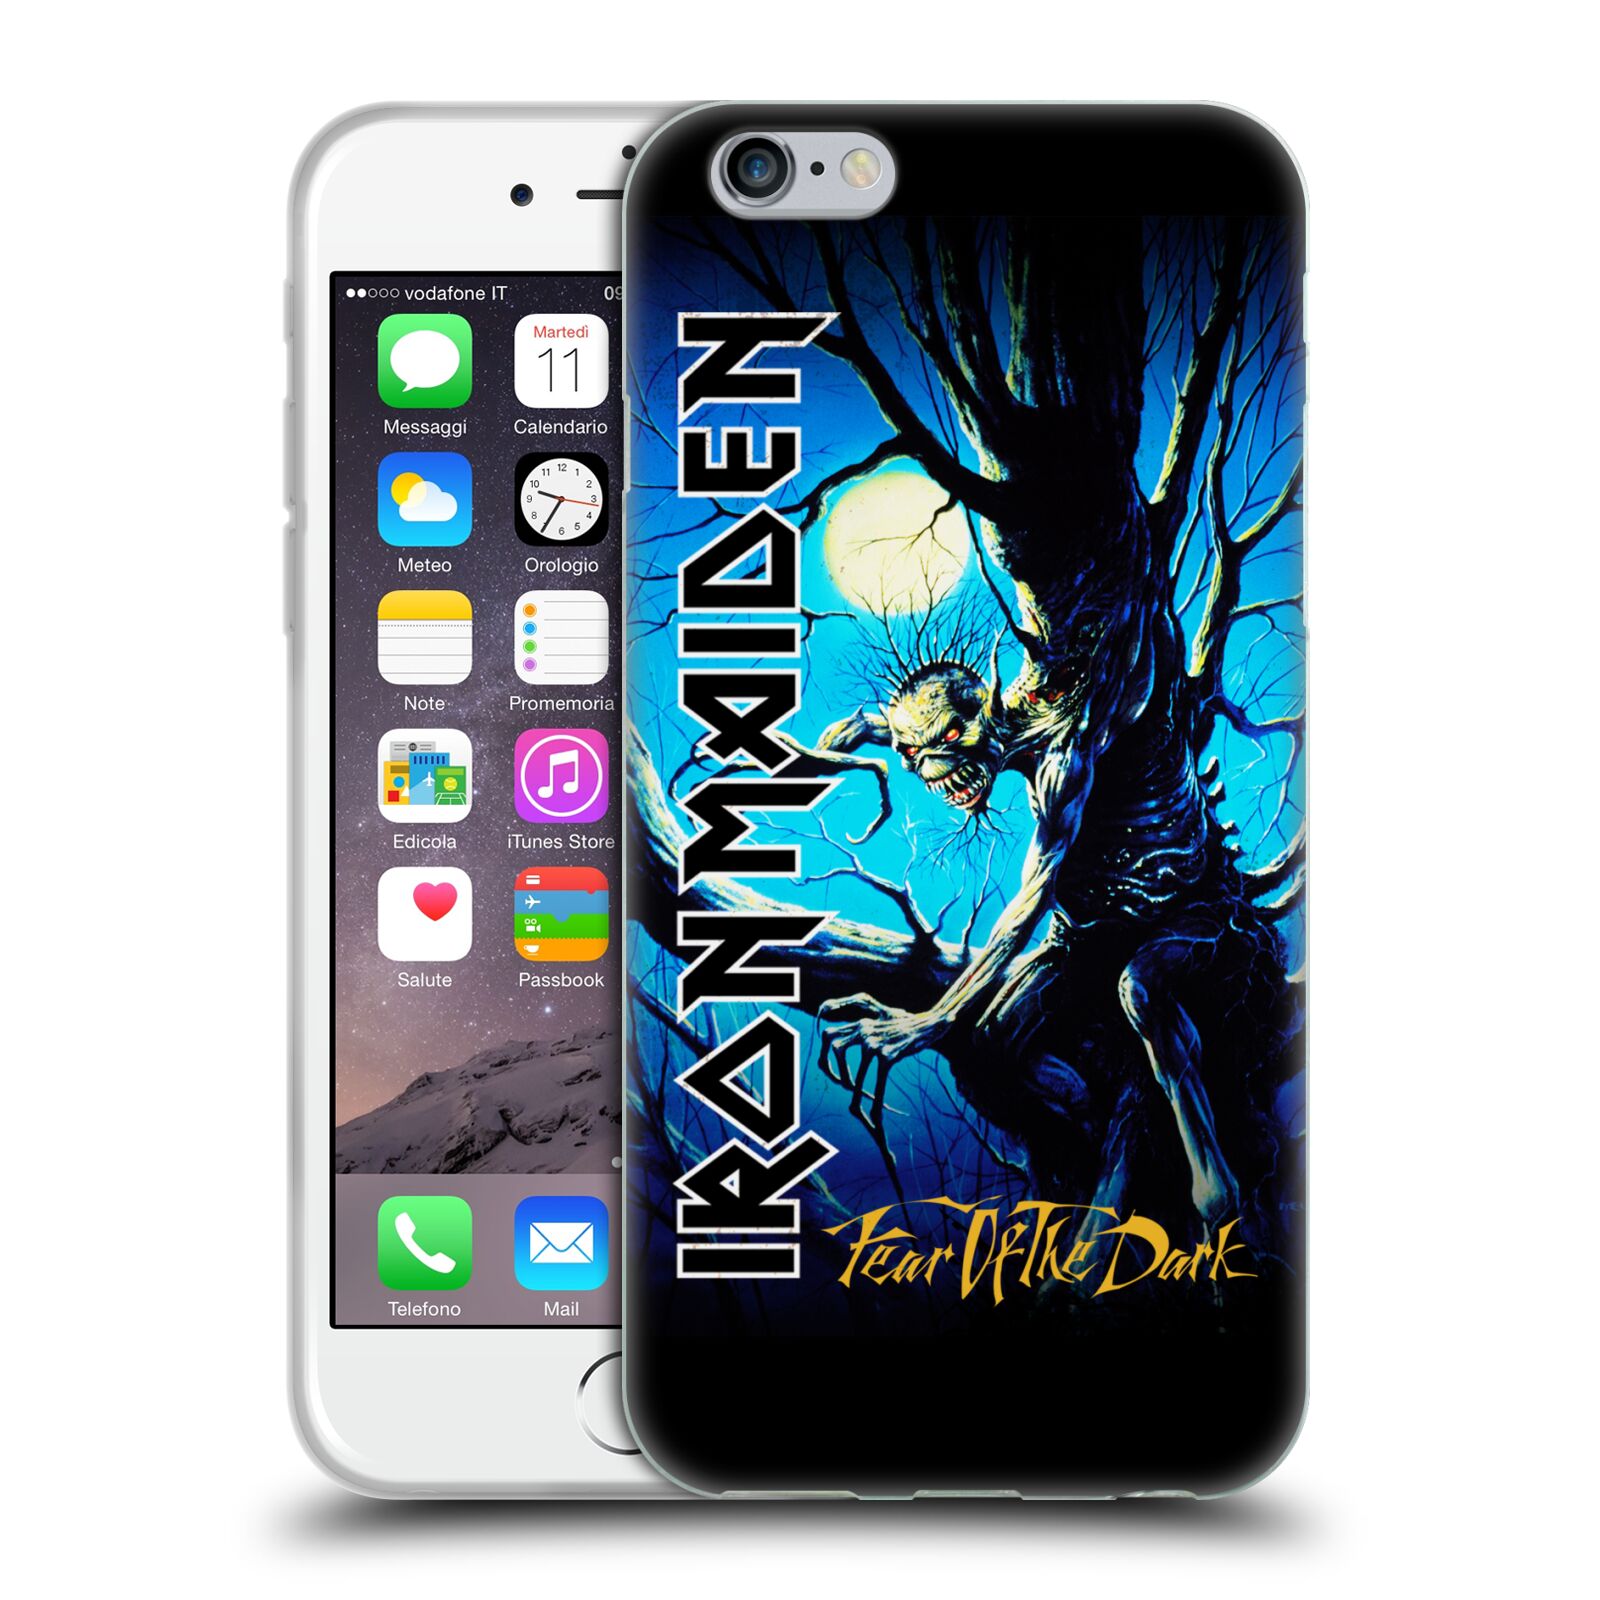 Silikonové pouzdro na mobil Apple iPhone 6 HEAD CASE - Iron Maiden - Fear Of The Dark (Silikonový kryt či obal na mobilní telefon s licencovaným motivem Iron Maiden Apple iPhone 6)